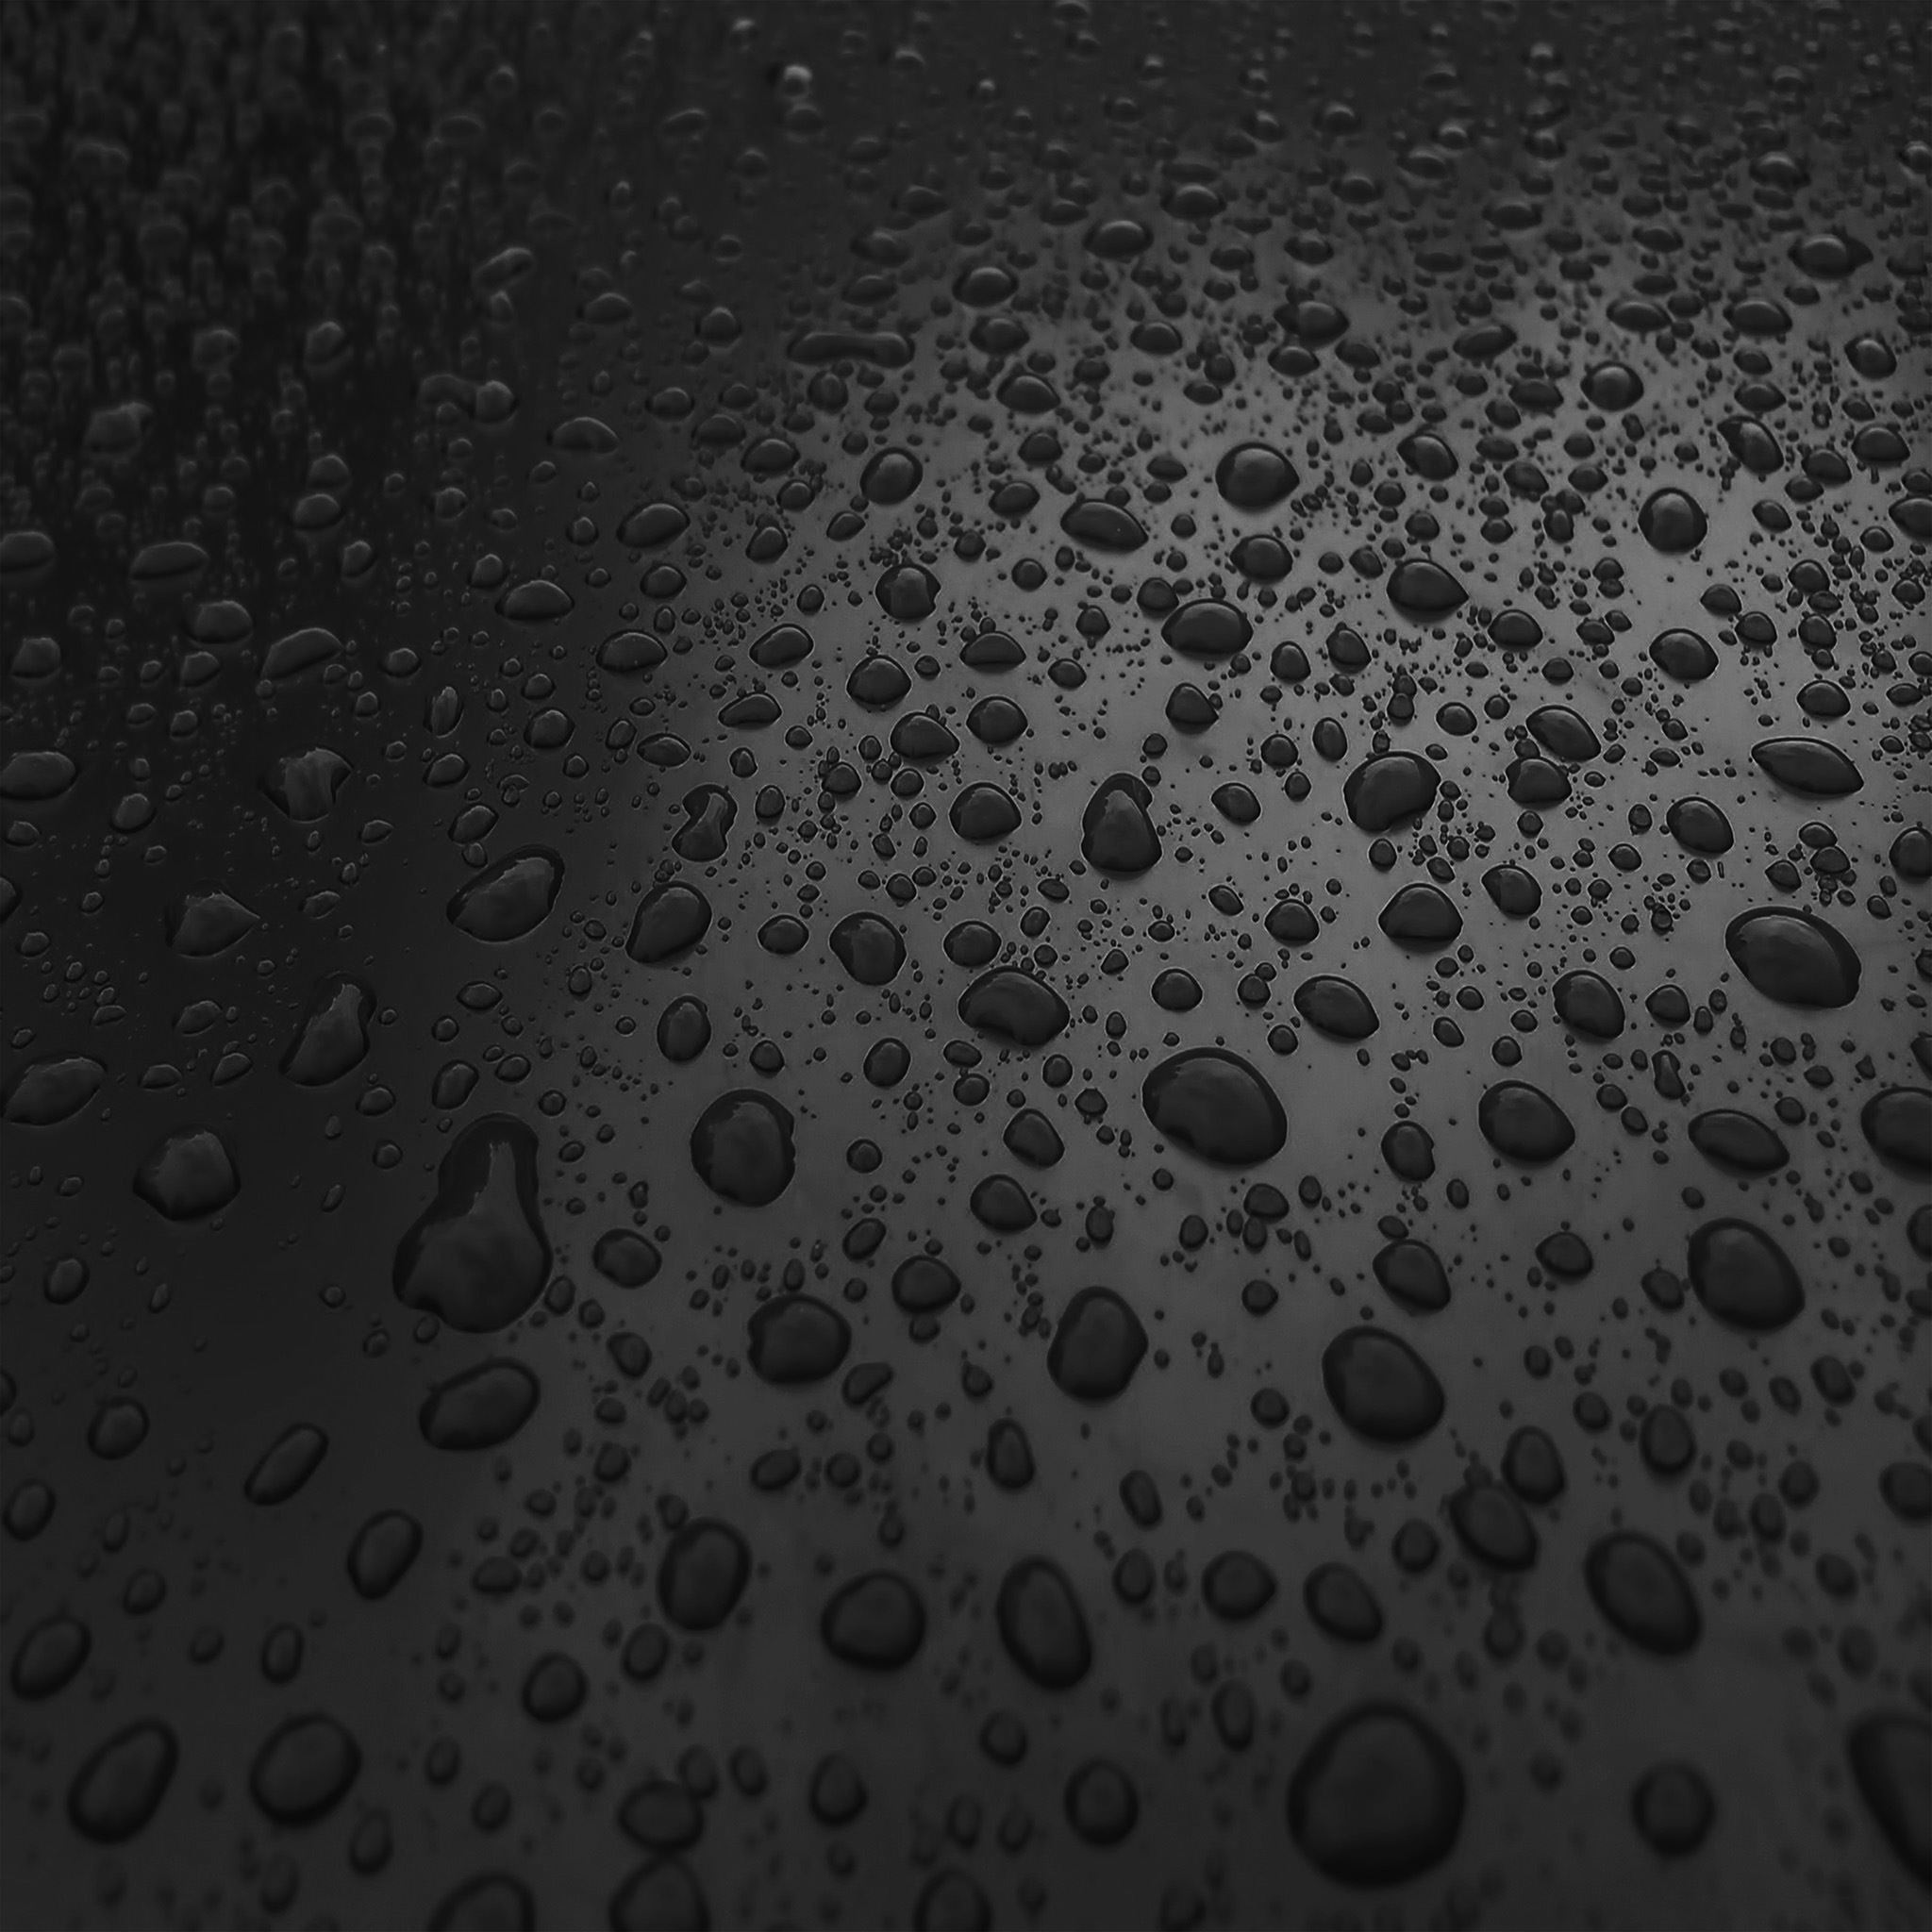 Rain Drop Nature Dark Bw Sad Pattern iPad Air wallpaper 